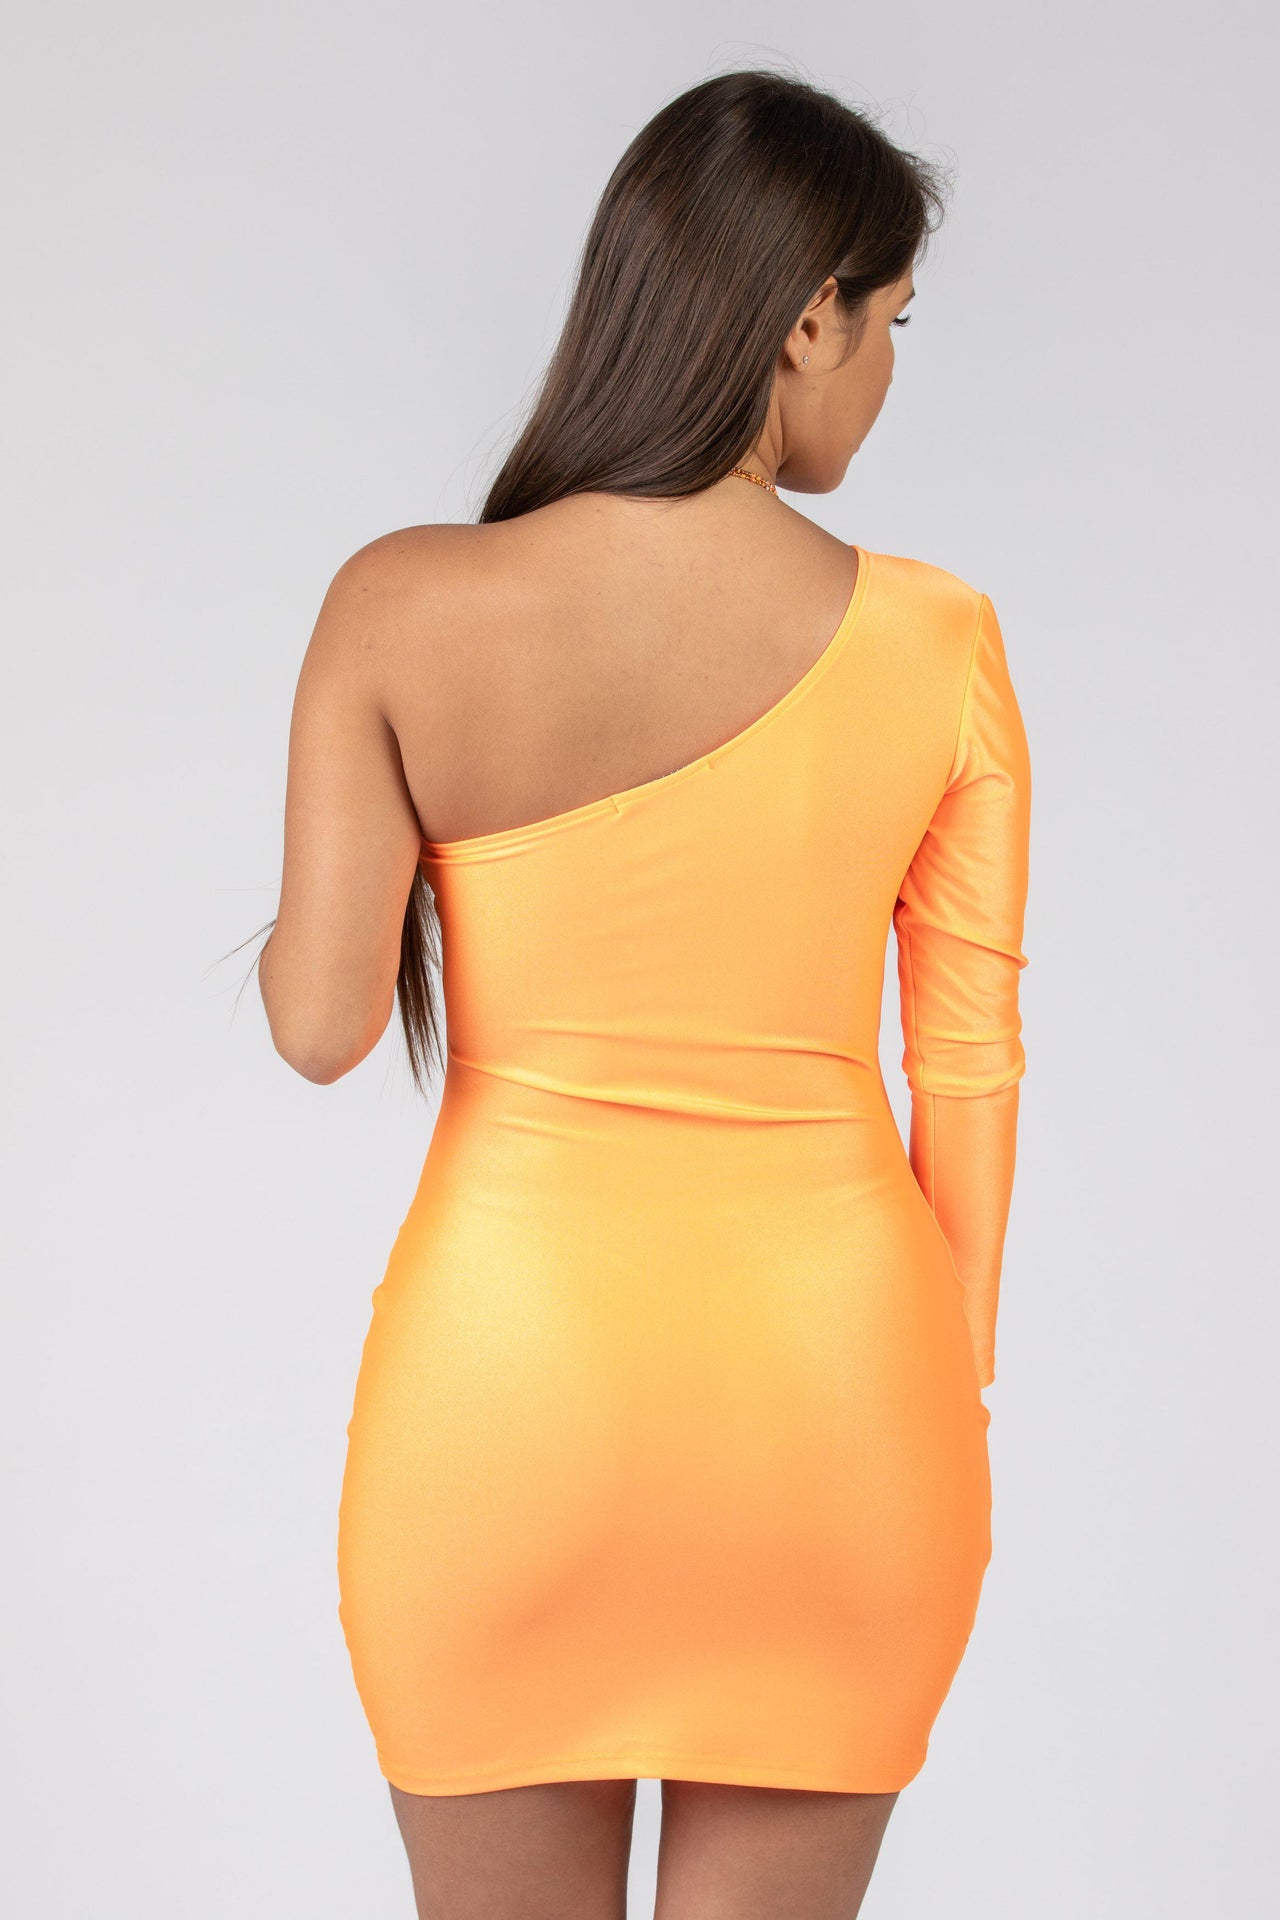 Vestido Baby Orange de Hombro Descubierto-Dresscode502